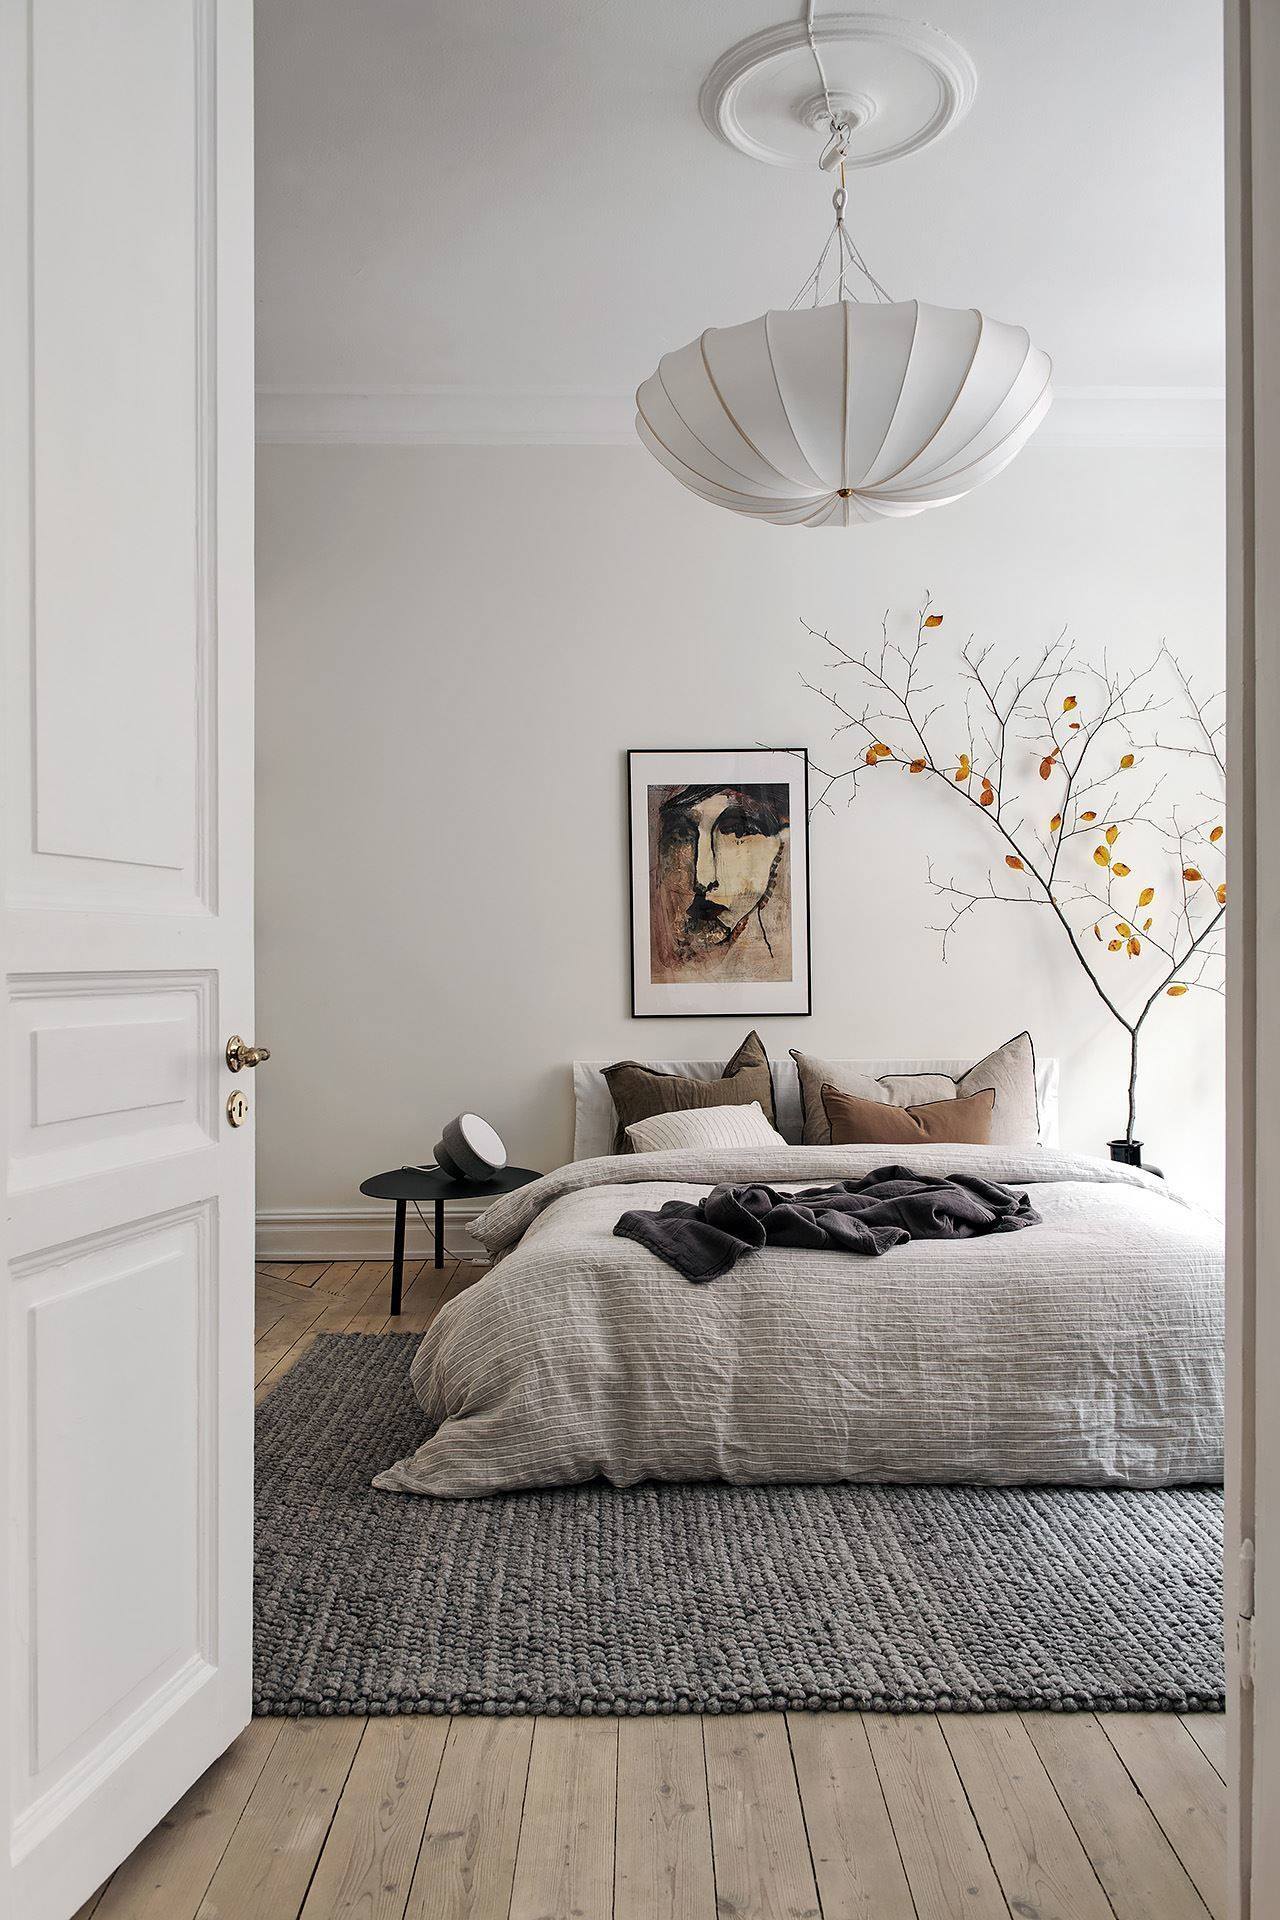 Giới thiệu] Mẫu thiết kế phòng ngủ nhỏ đẹp hiện đại tone màu trắng